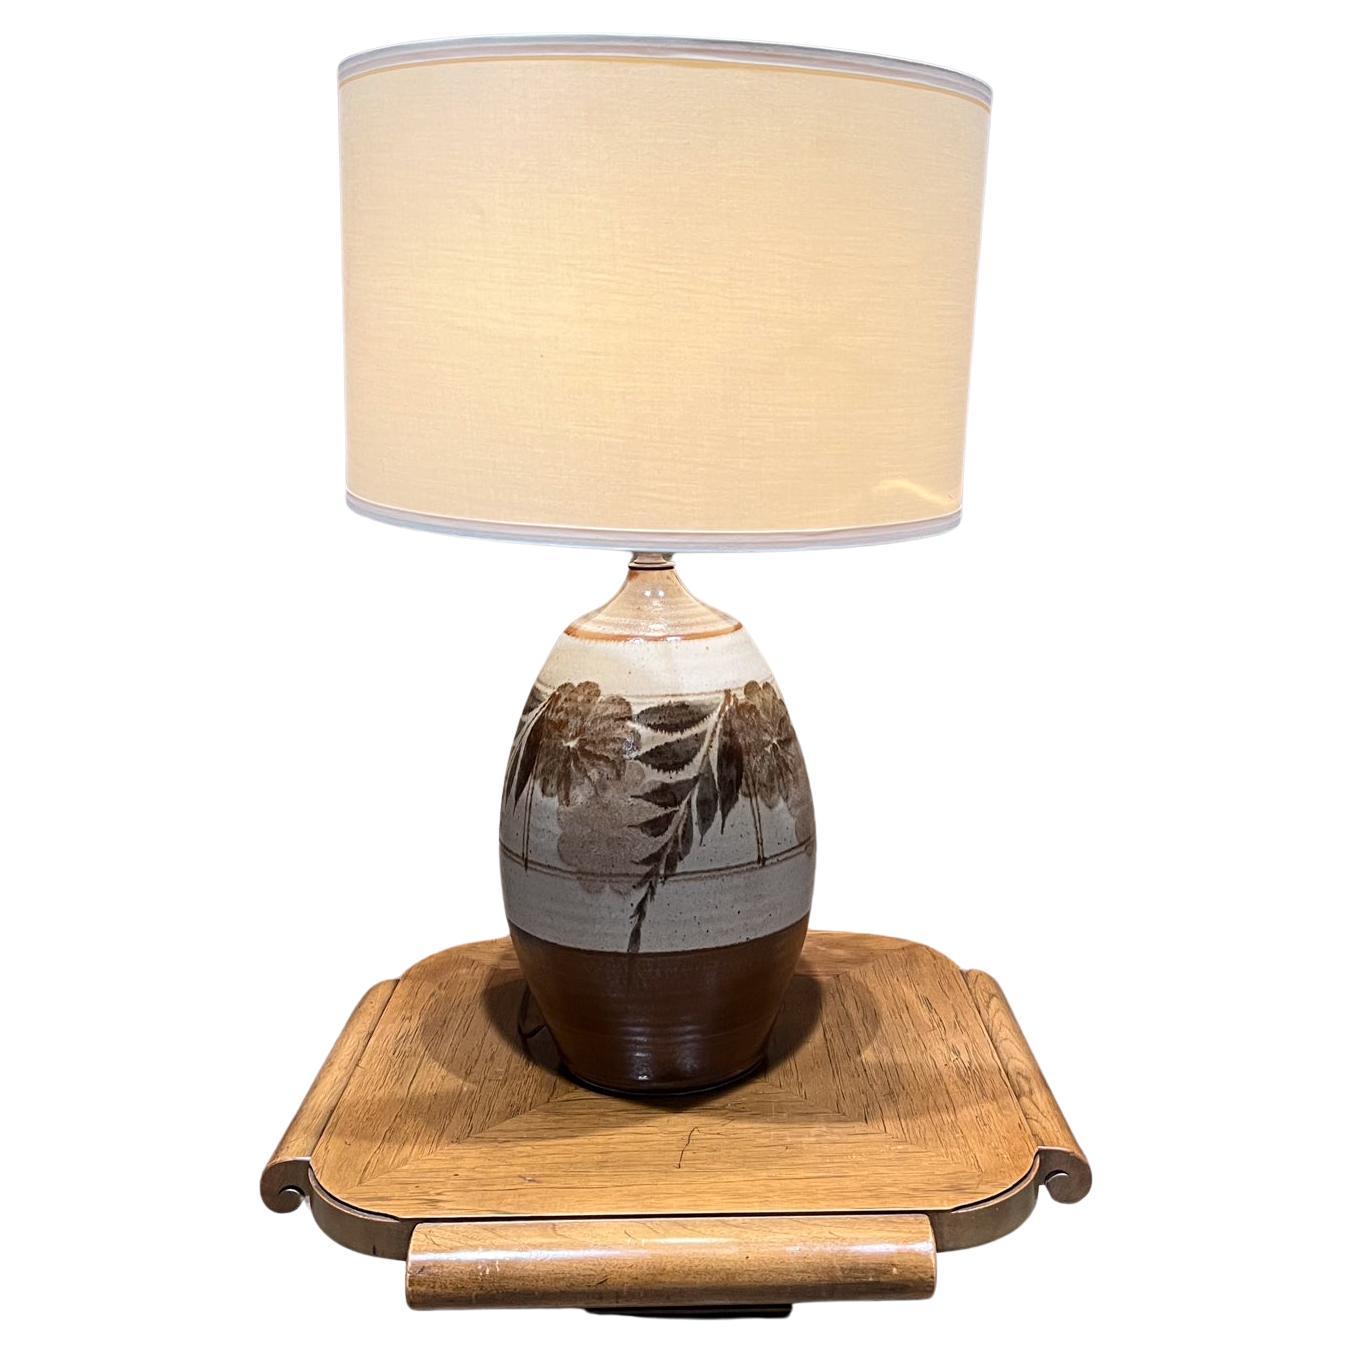 1960 Studio Art Pottery Tall Table Lamp Glazed Stoneware Floral design
dans le style de Gordon Martz, Wishon-Harrell
Non marqué
19,5 h x 9,5 diamètre
Vintage d'origine non restauré.
Pas d'abat-jour ni d'ampoule inclus
Testé et fonctionnant.
Veuillez